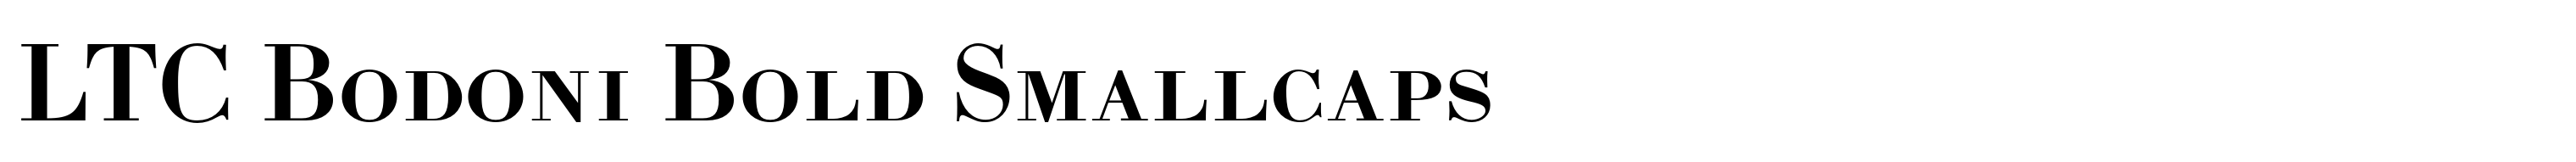 LTC Bodoni Bold Smallcaps